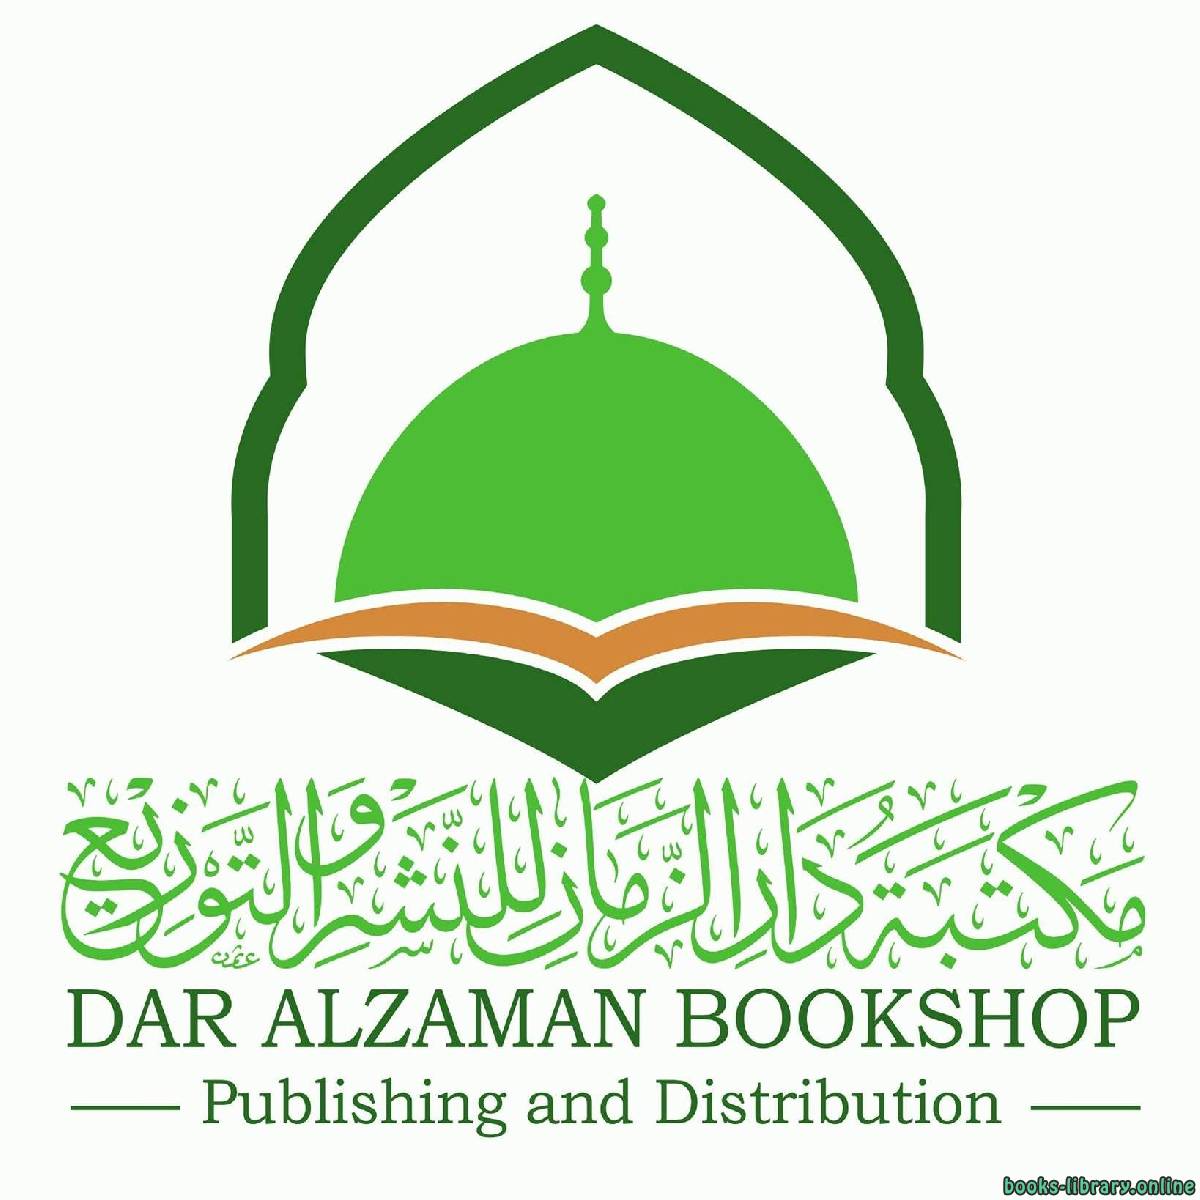 كتب مكتبة دار الزمان للنشر والتوزيع، المدينة المنورة - السعودية